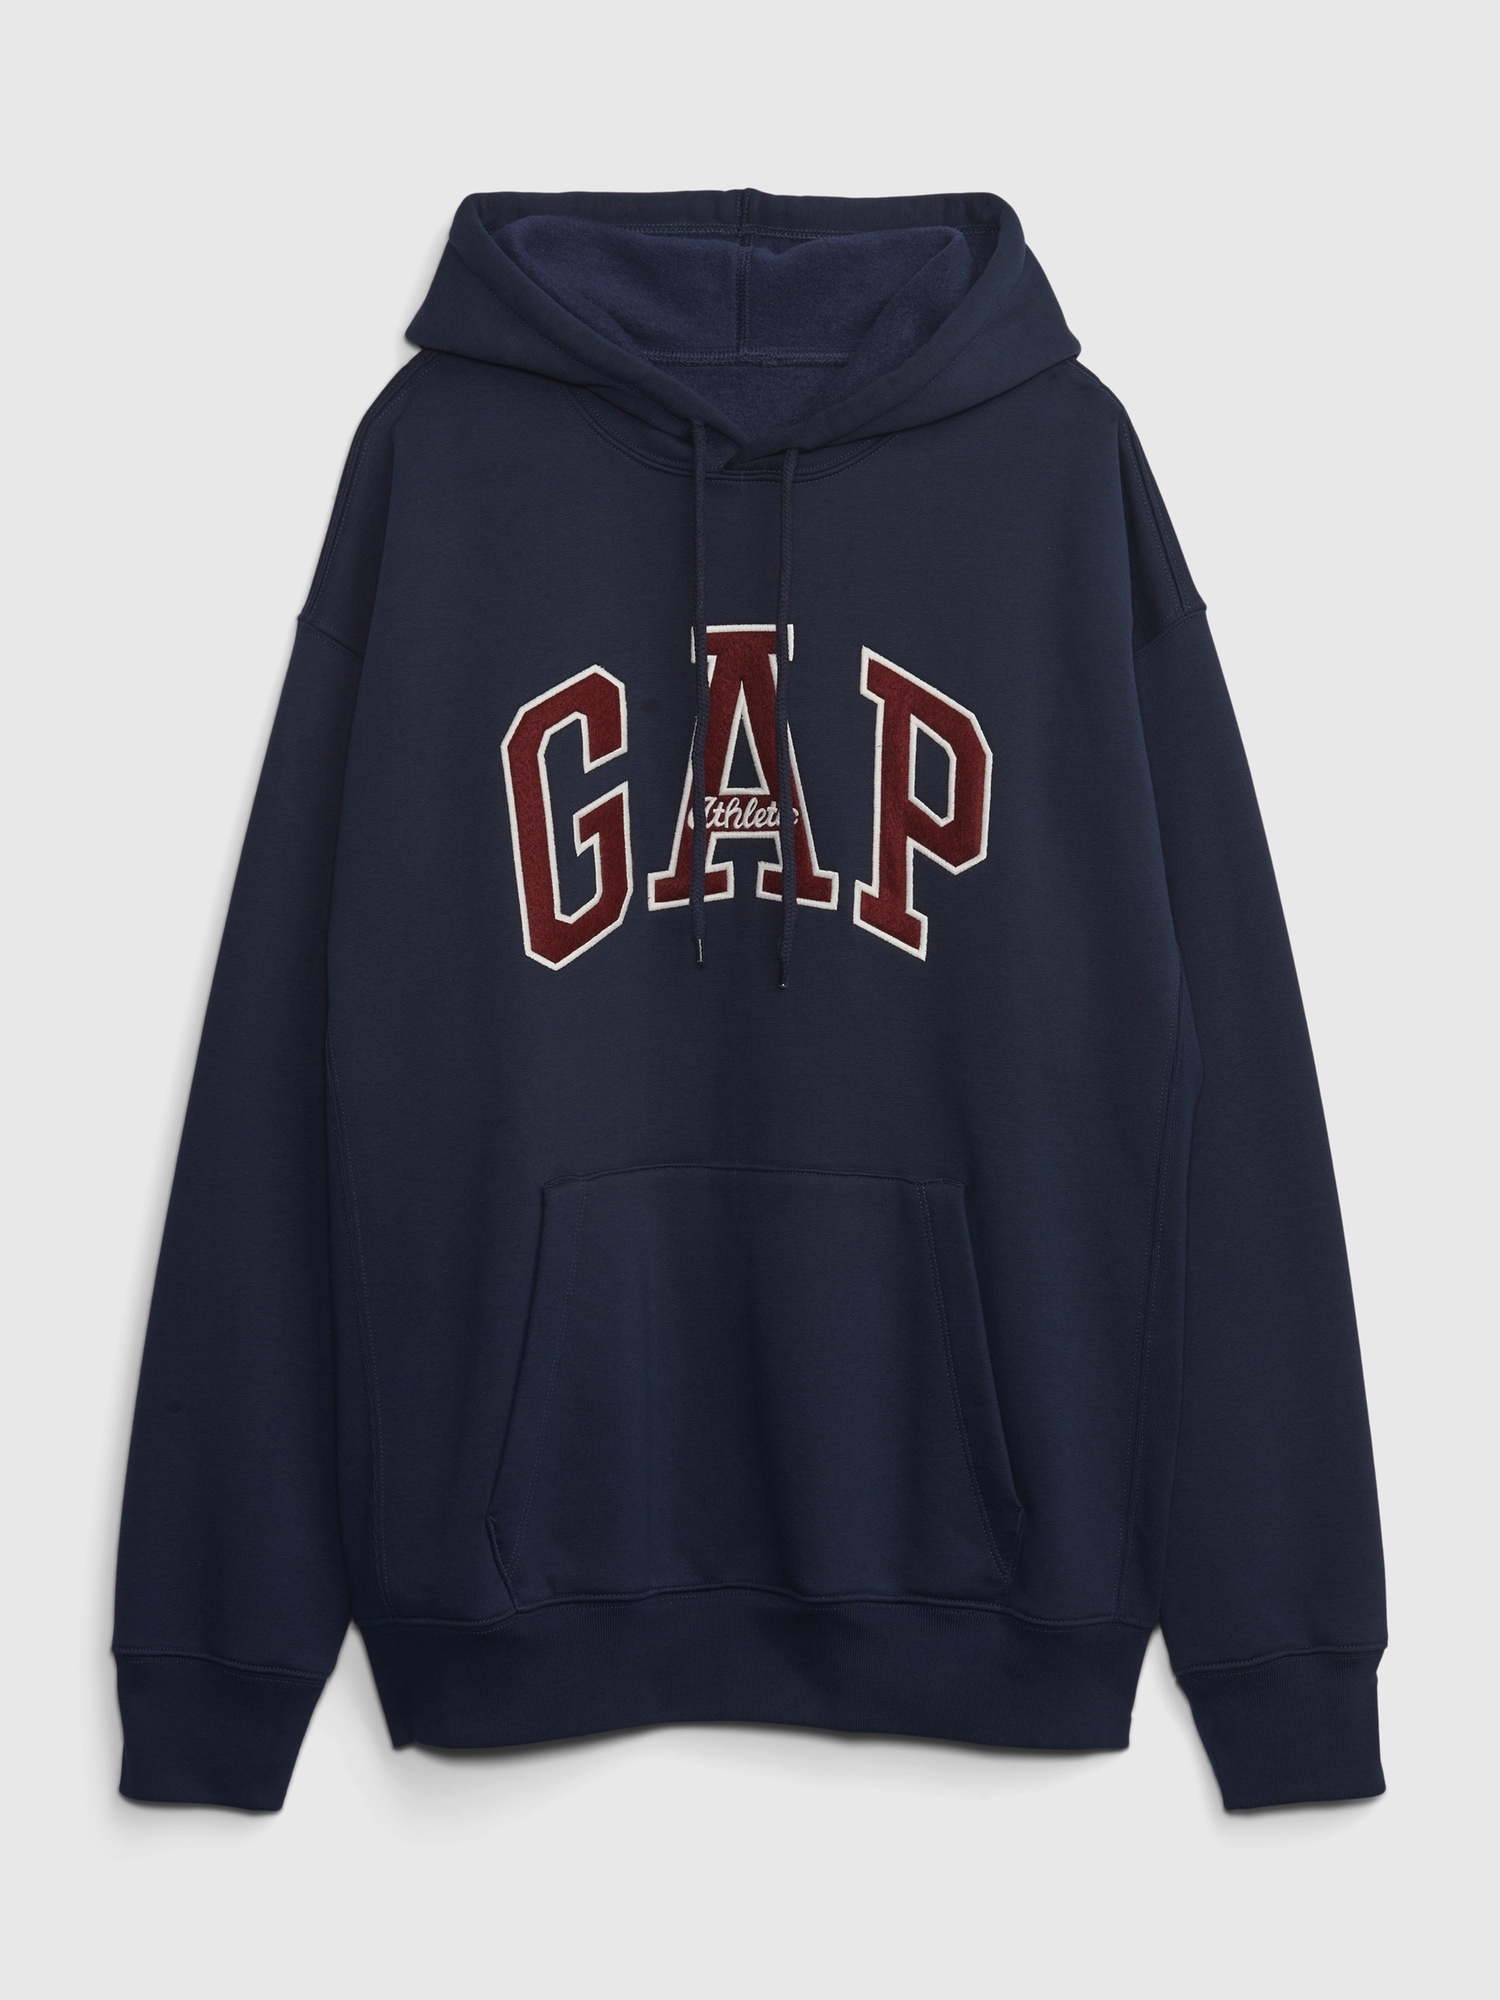 Gap公式オンラインストア | アーカイブ リイシュー GAPアーチロゴ